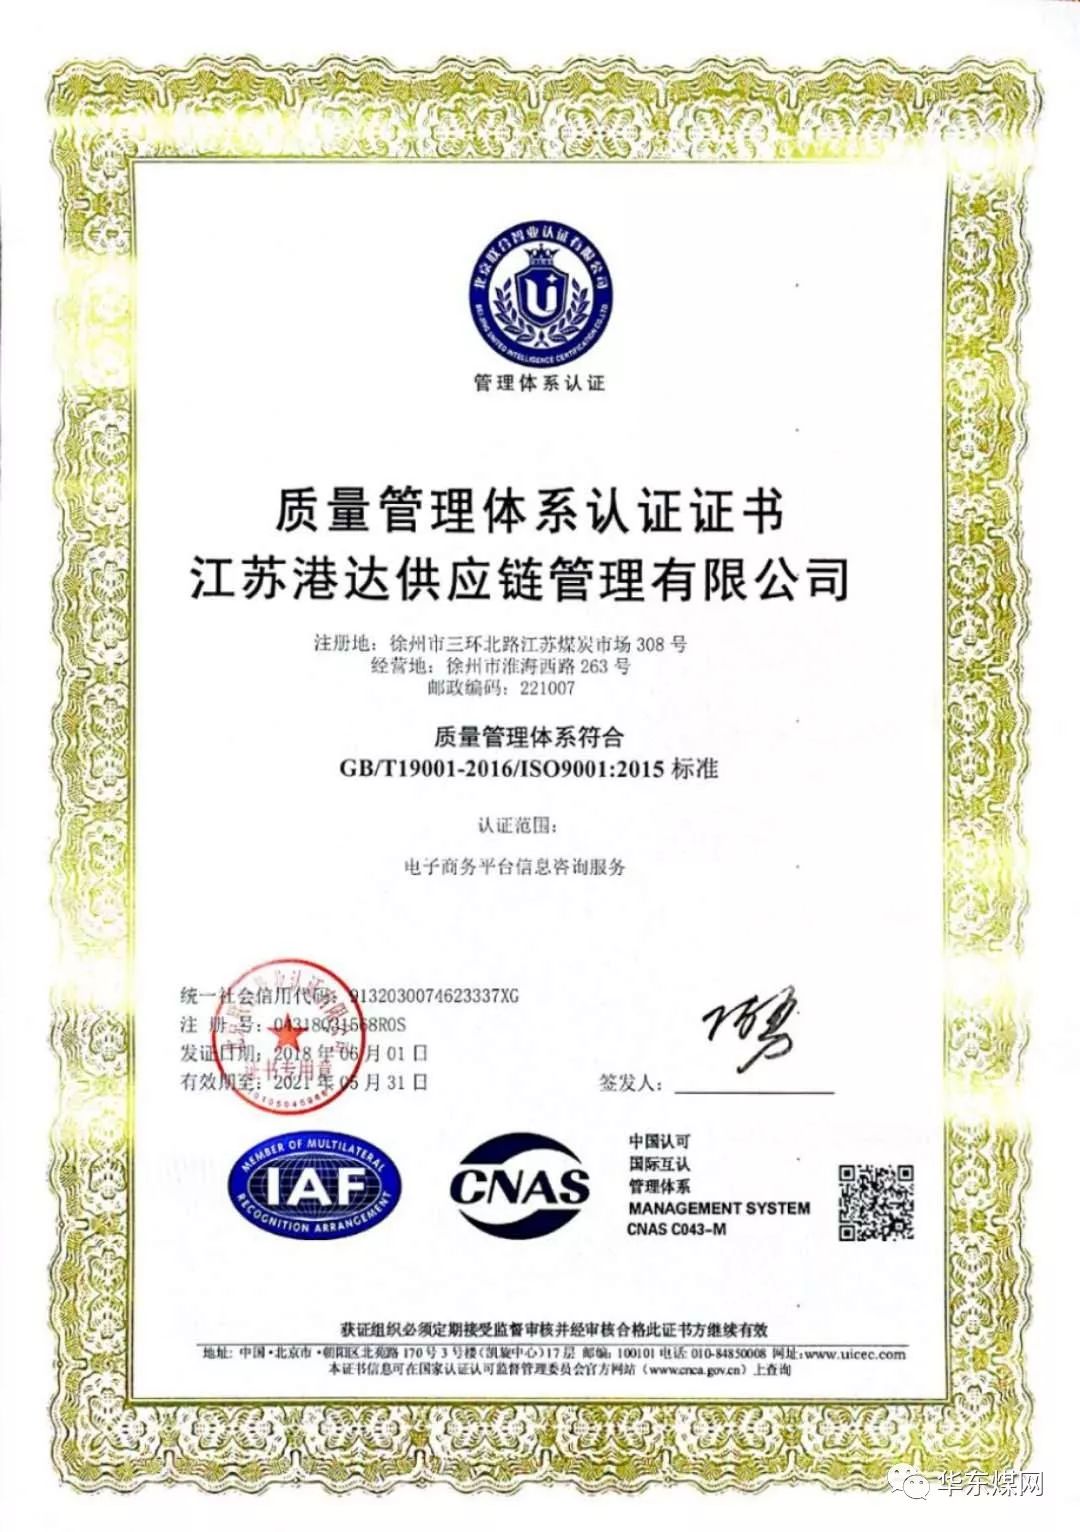 【要闻】江苏港达供应链管理有限公司获得iso2015版质量管理体系认证